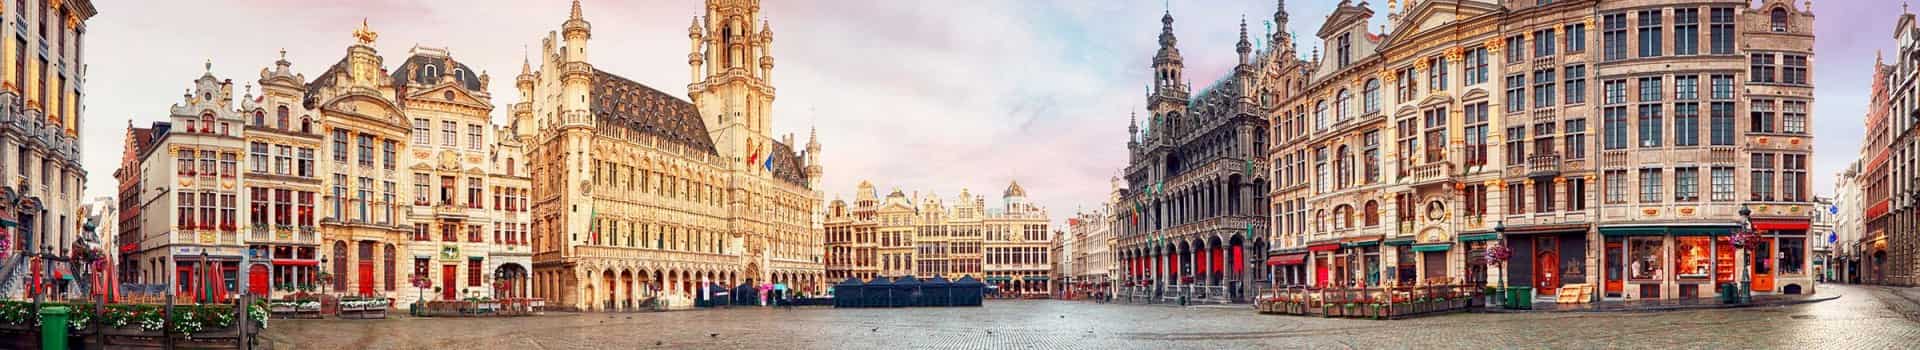 Hotels met halfpension aanbiedingen in België